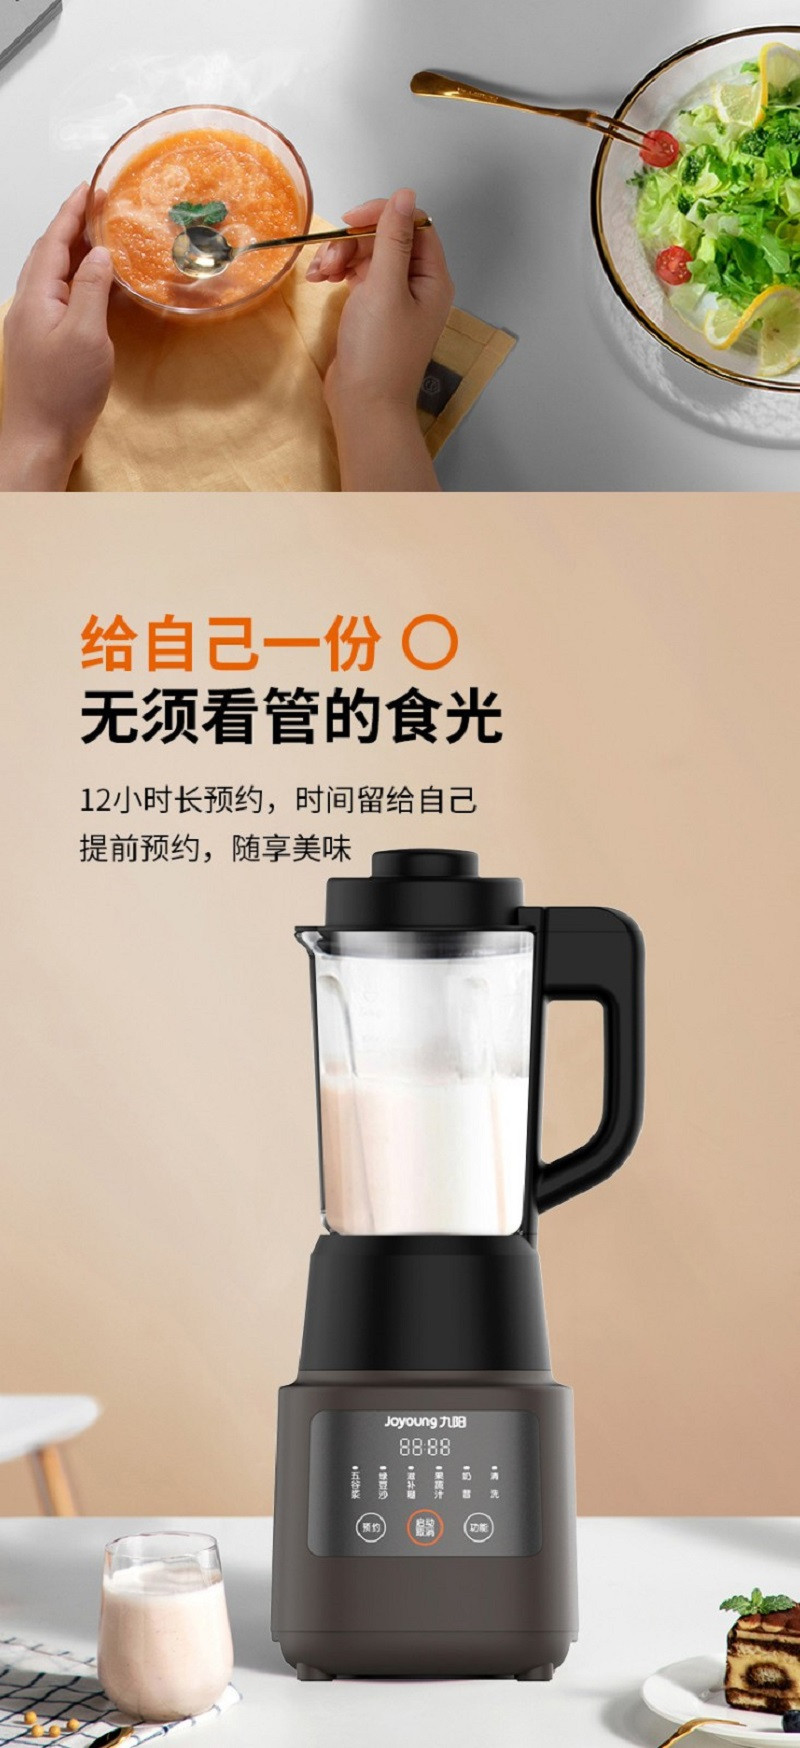 九阳（Joyoung）厨房家用破壁机多功能搅拌加热破壁料理可预约保温婴儿辅食豆浆榨汁L12-P312